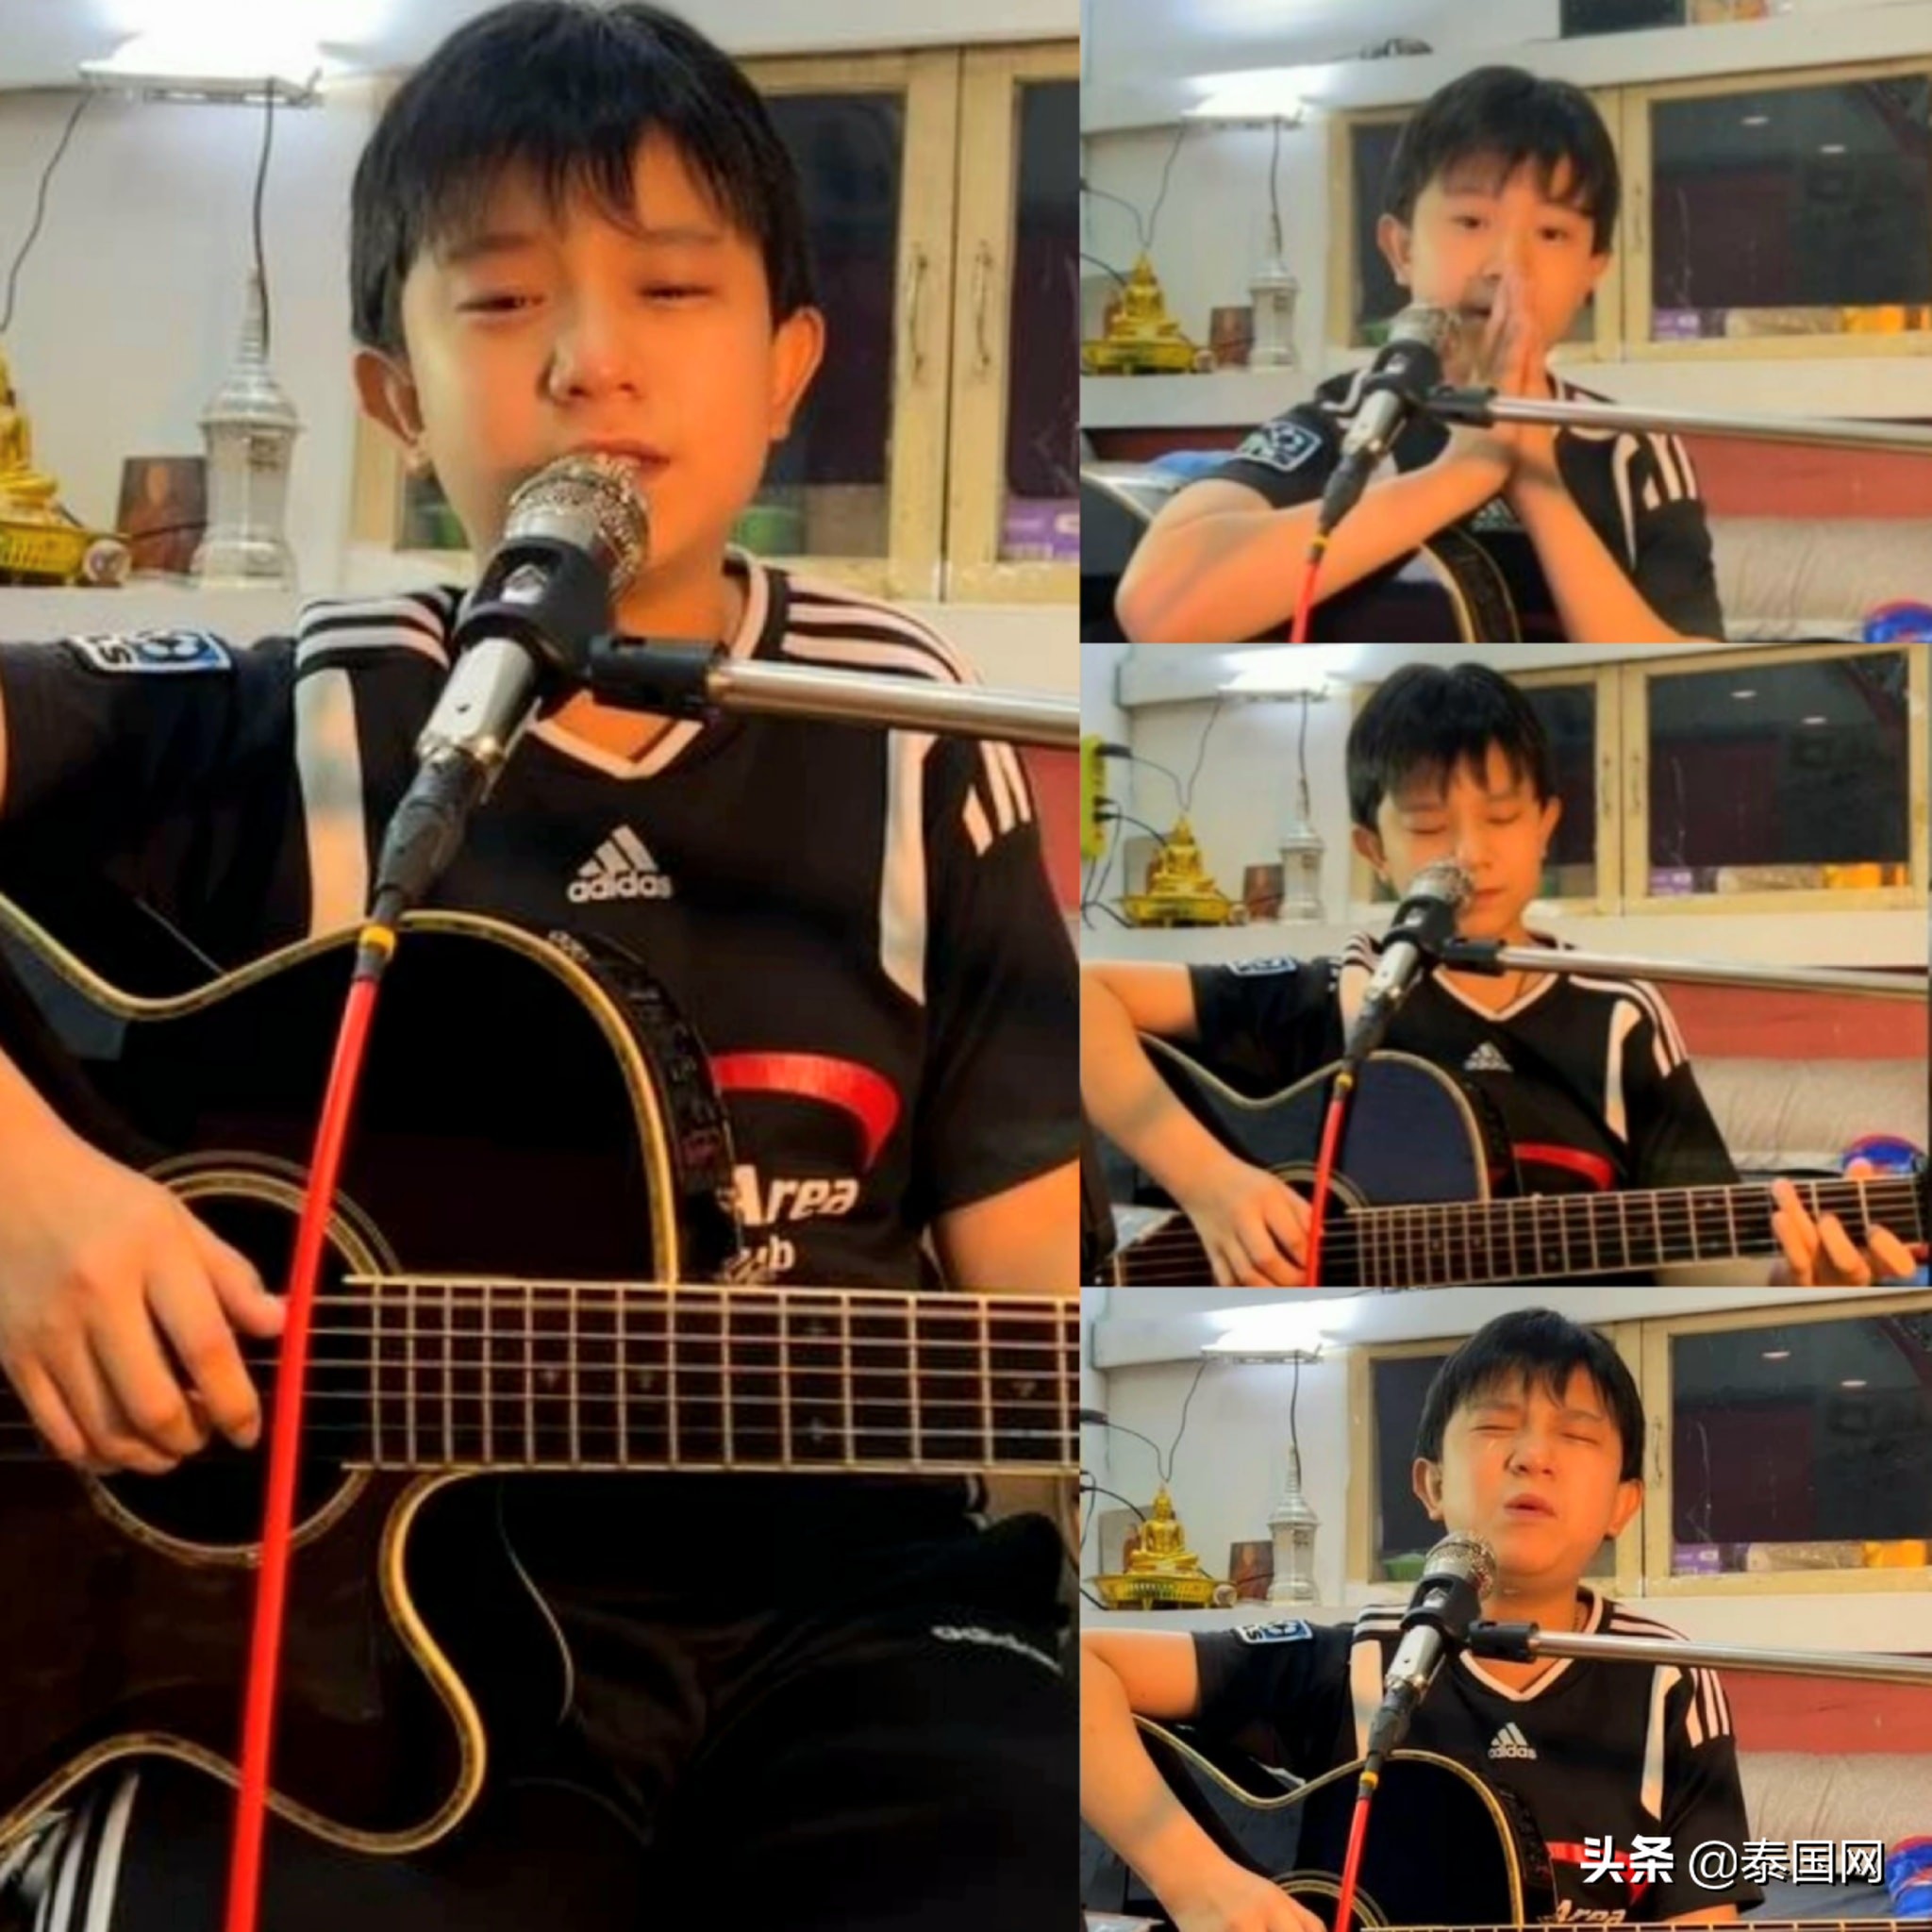 泰国小男孩直播唱歌赚钱葬父 感动无数网友